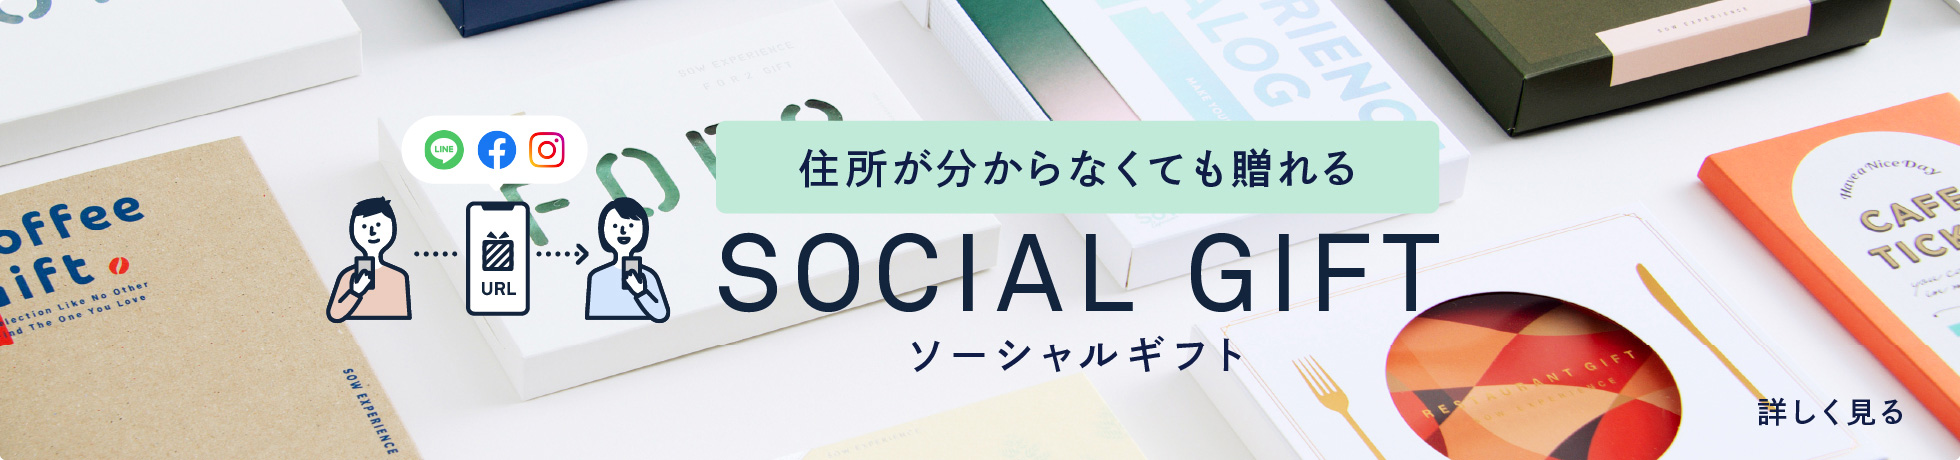 ソーシャルギフト SOCIAL GIFT